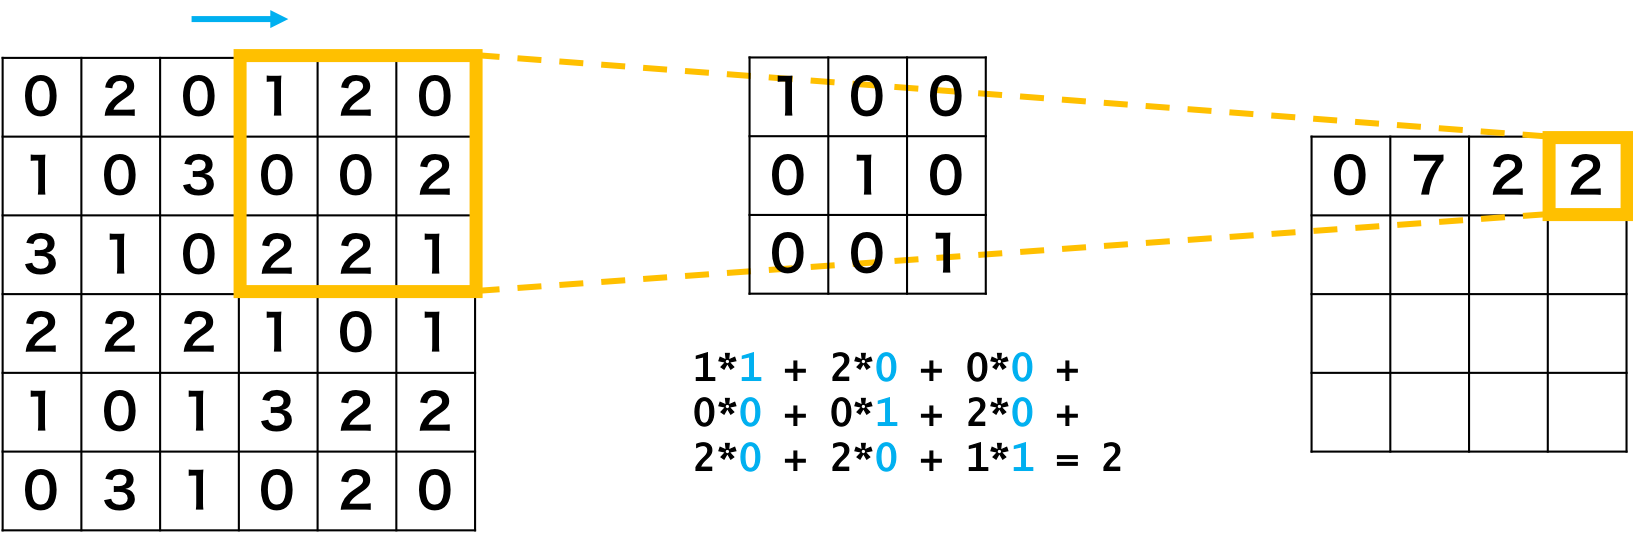 畳み込みニューラルネットワークの畳み込み層の例4